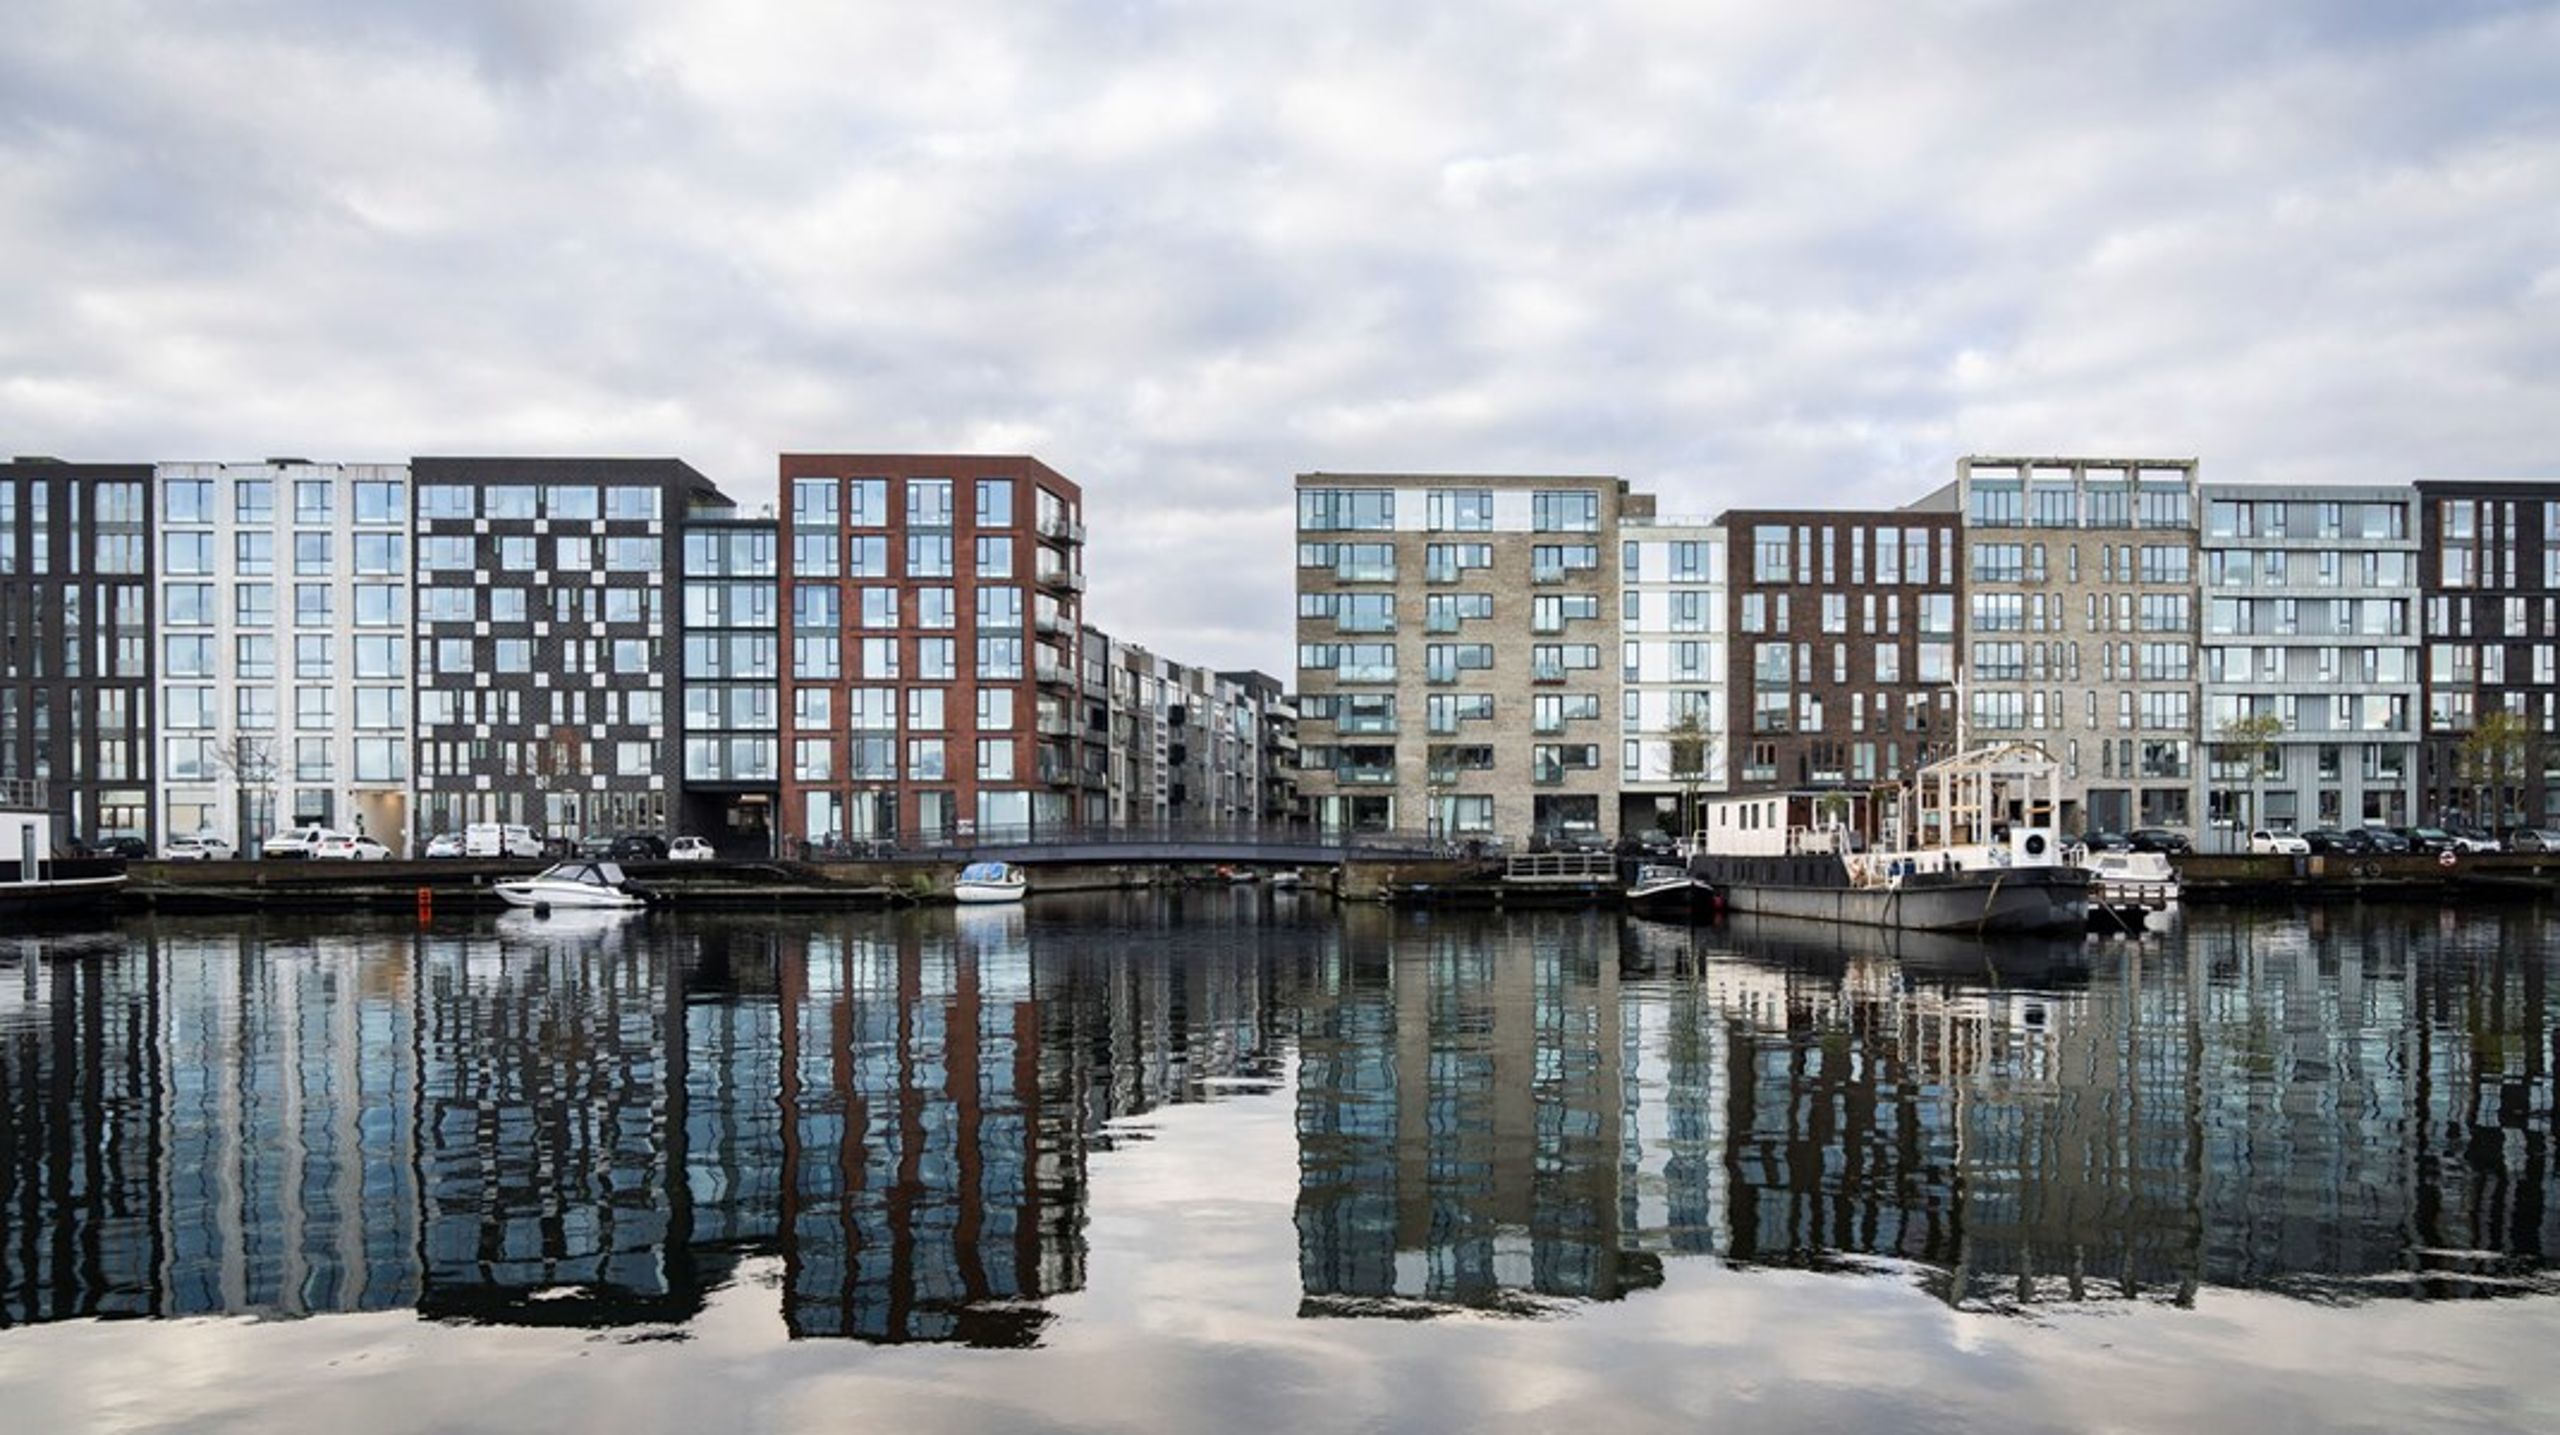 Ekspertgruppe under Kulturministeriet skal give sit bud på en ny dansk arkitekturpolitik. I første omgang har ekspertgruppen tegnet et udfordringsbillede med centrale problemer i dag, som en ny arkitekturpolitik skal løse.